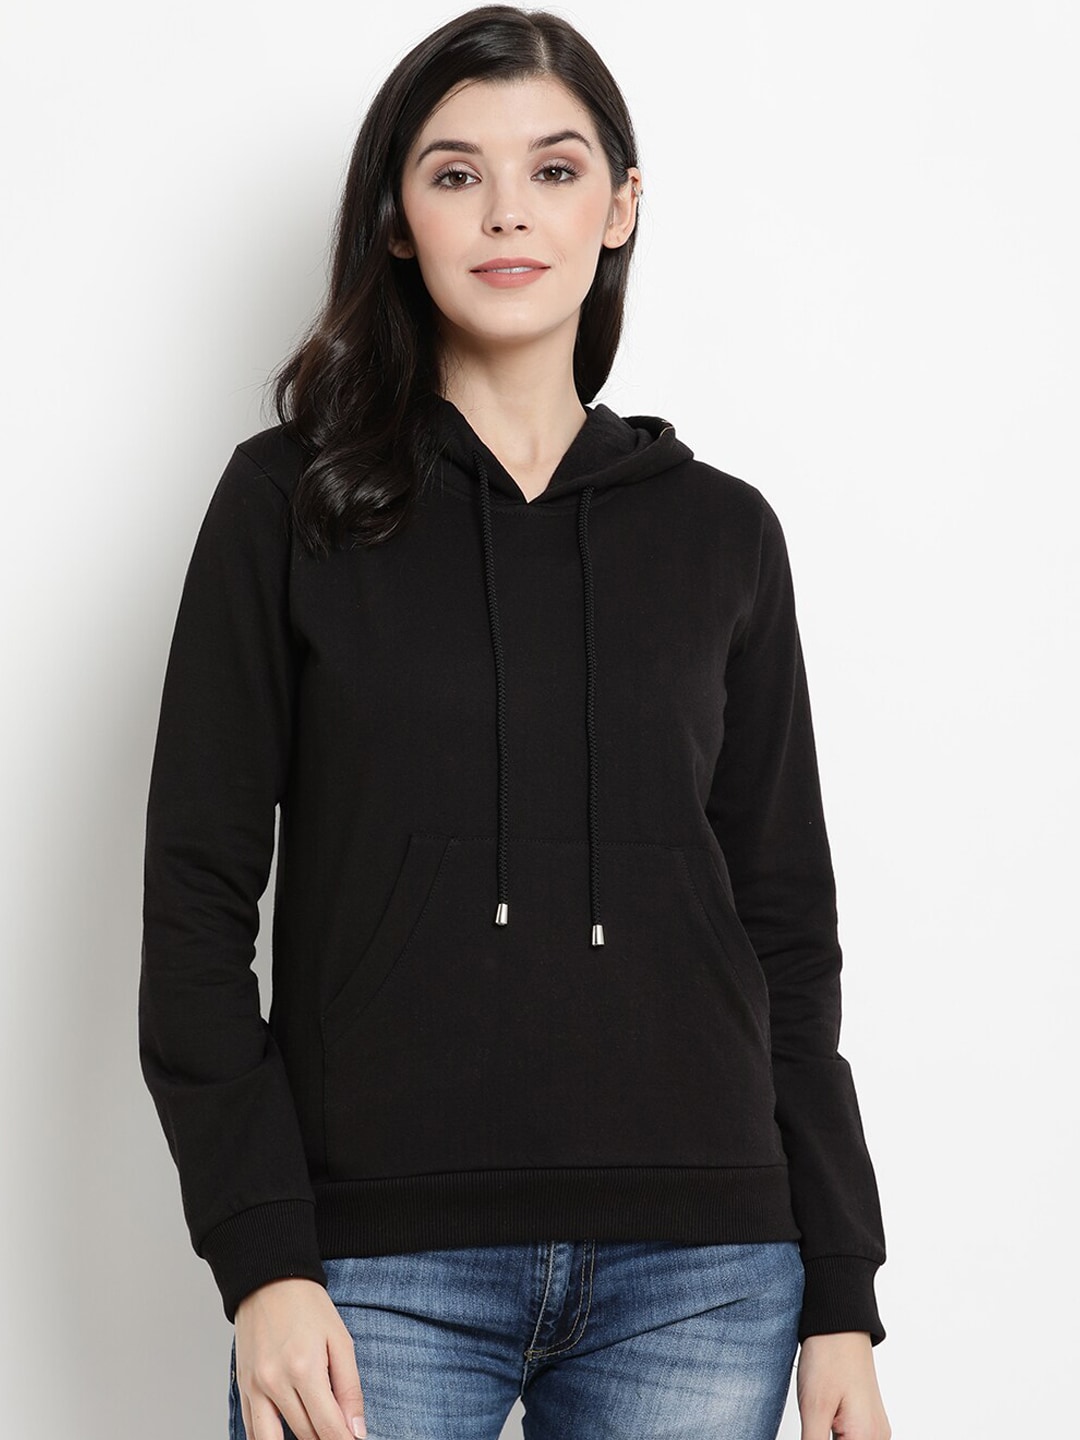 The Vanca Women Black Solid Sweatshirt Price in India